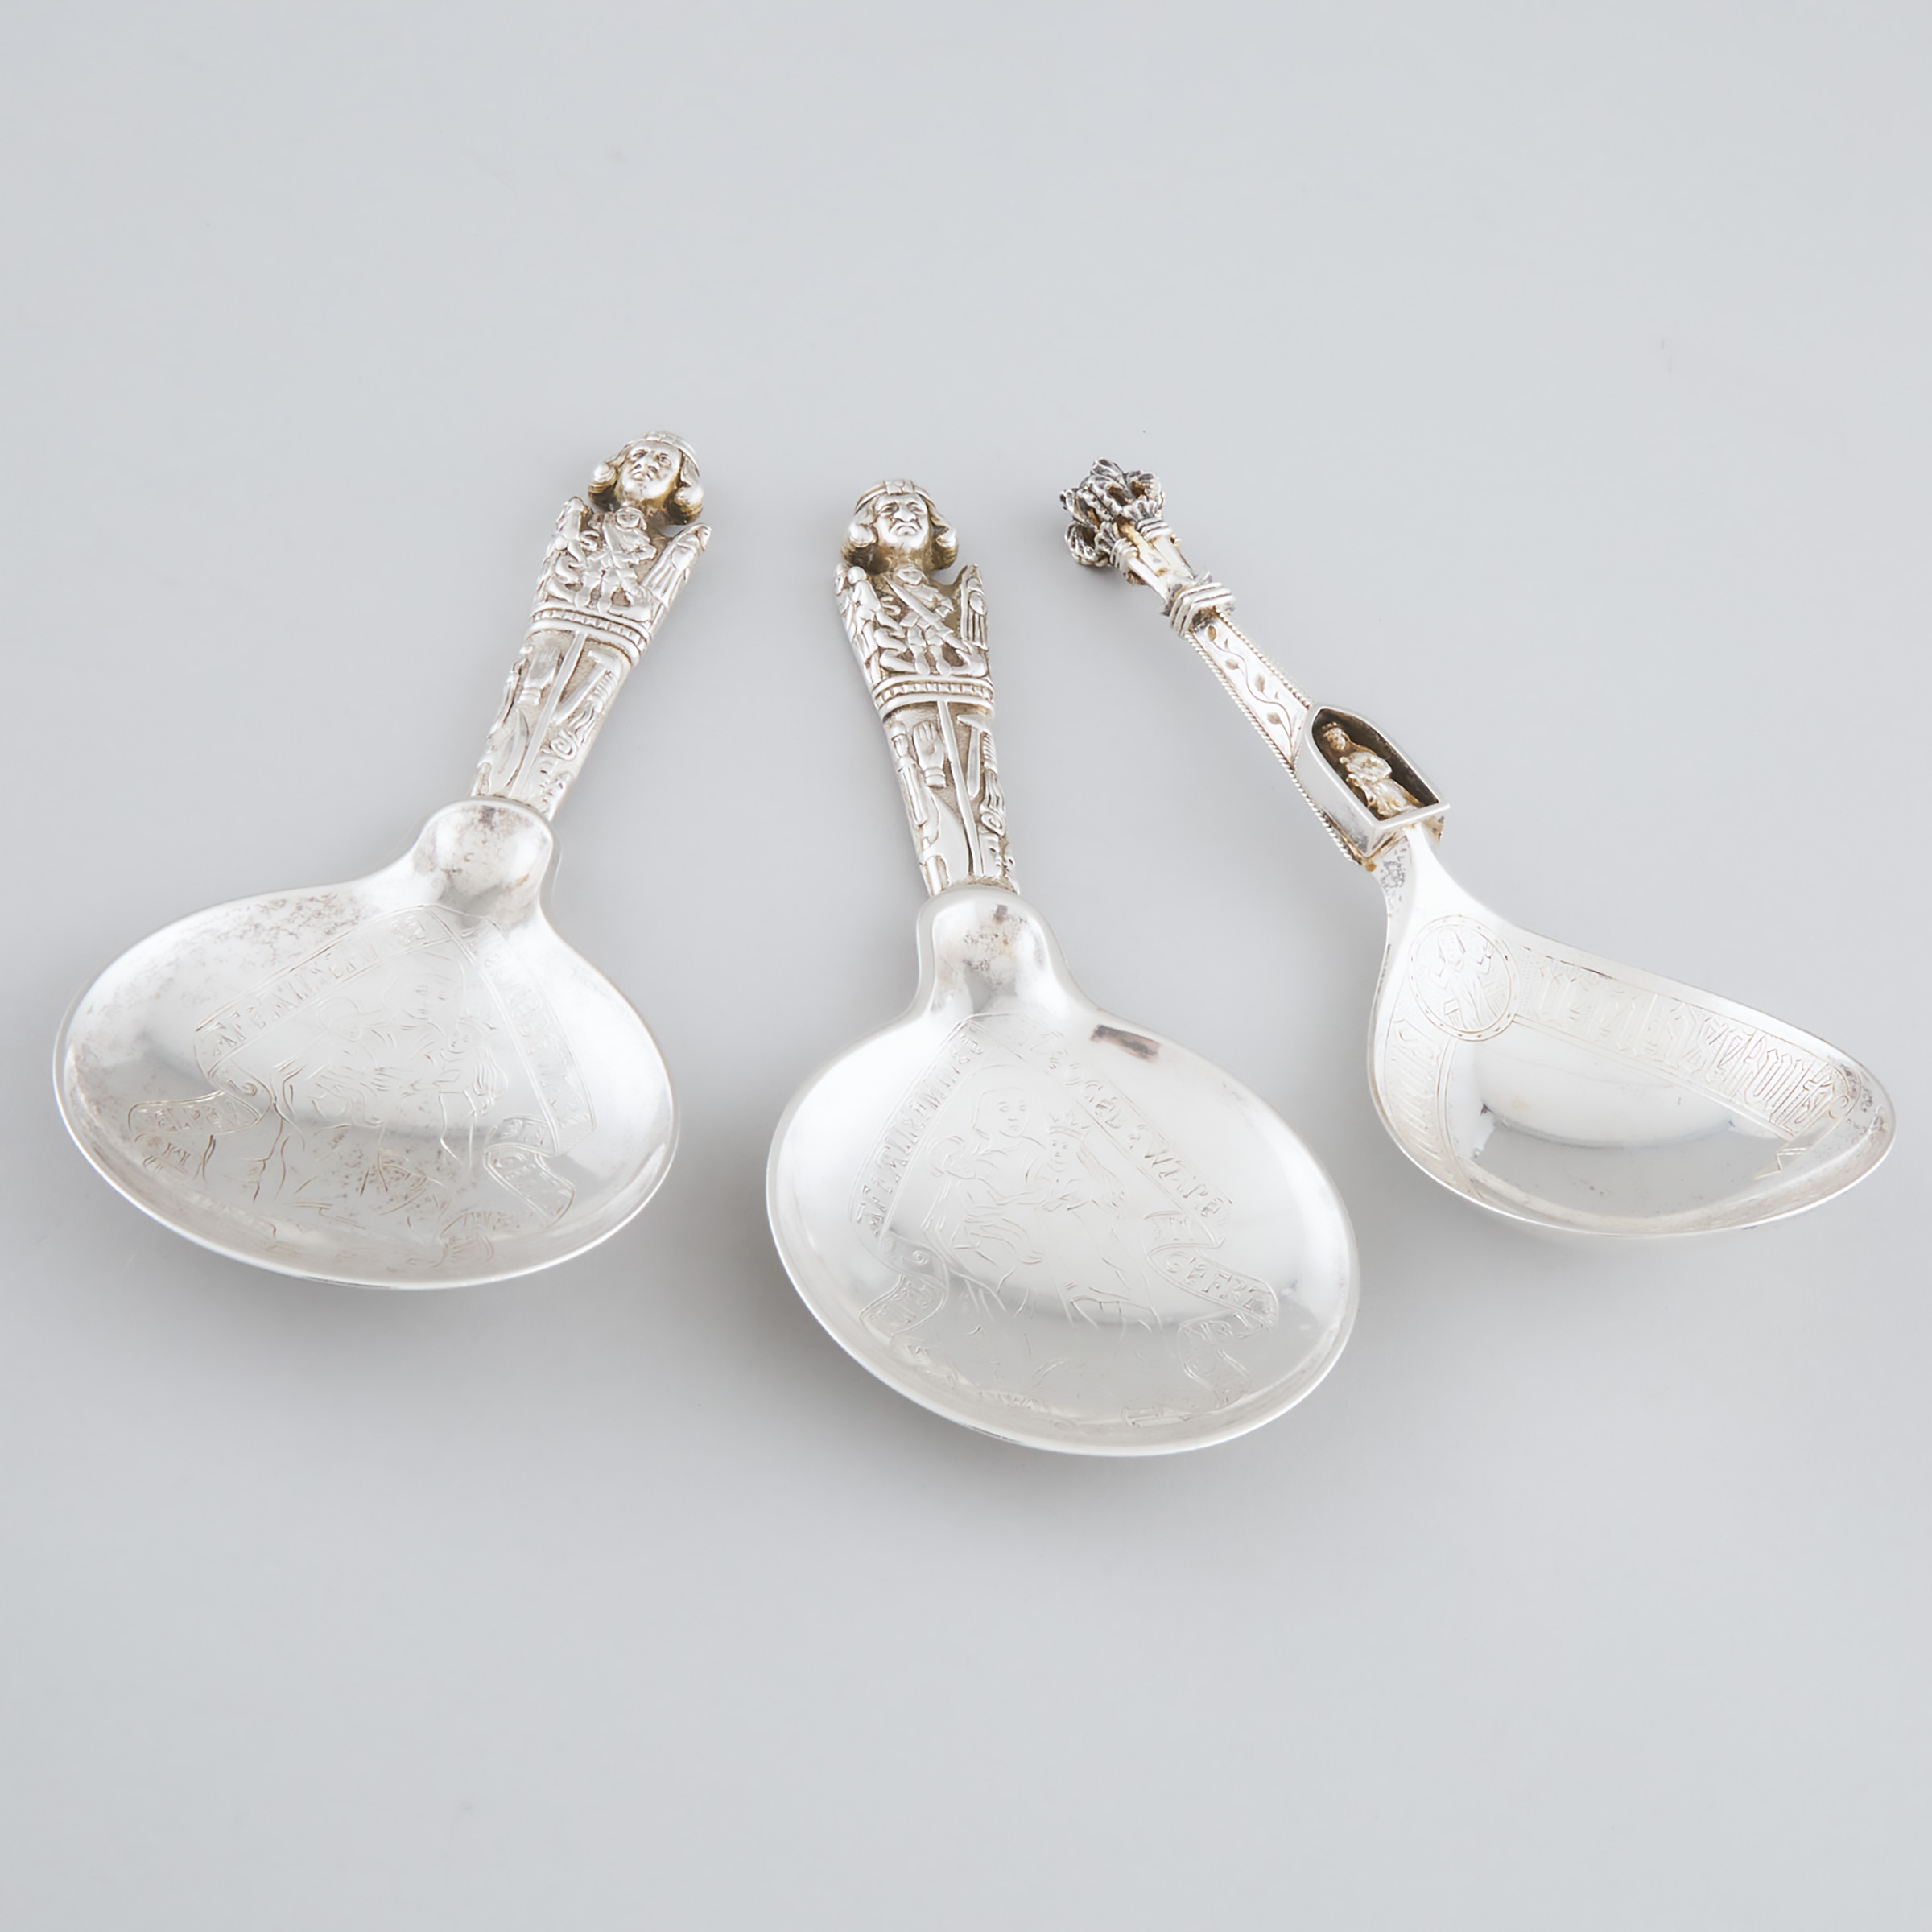 Three Scandinavian Silver Christening Spoons, V. Christesen, Copenhagen, 1875 (2) and Marius Hammer, Bergen, 1888